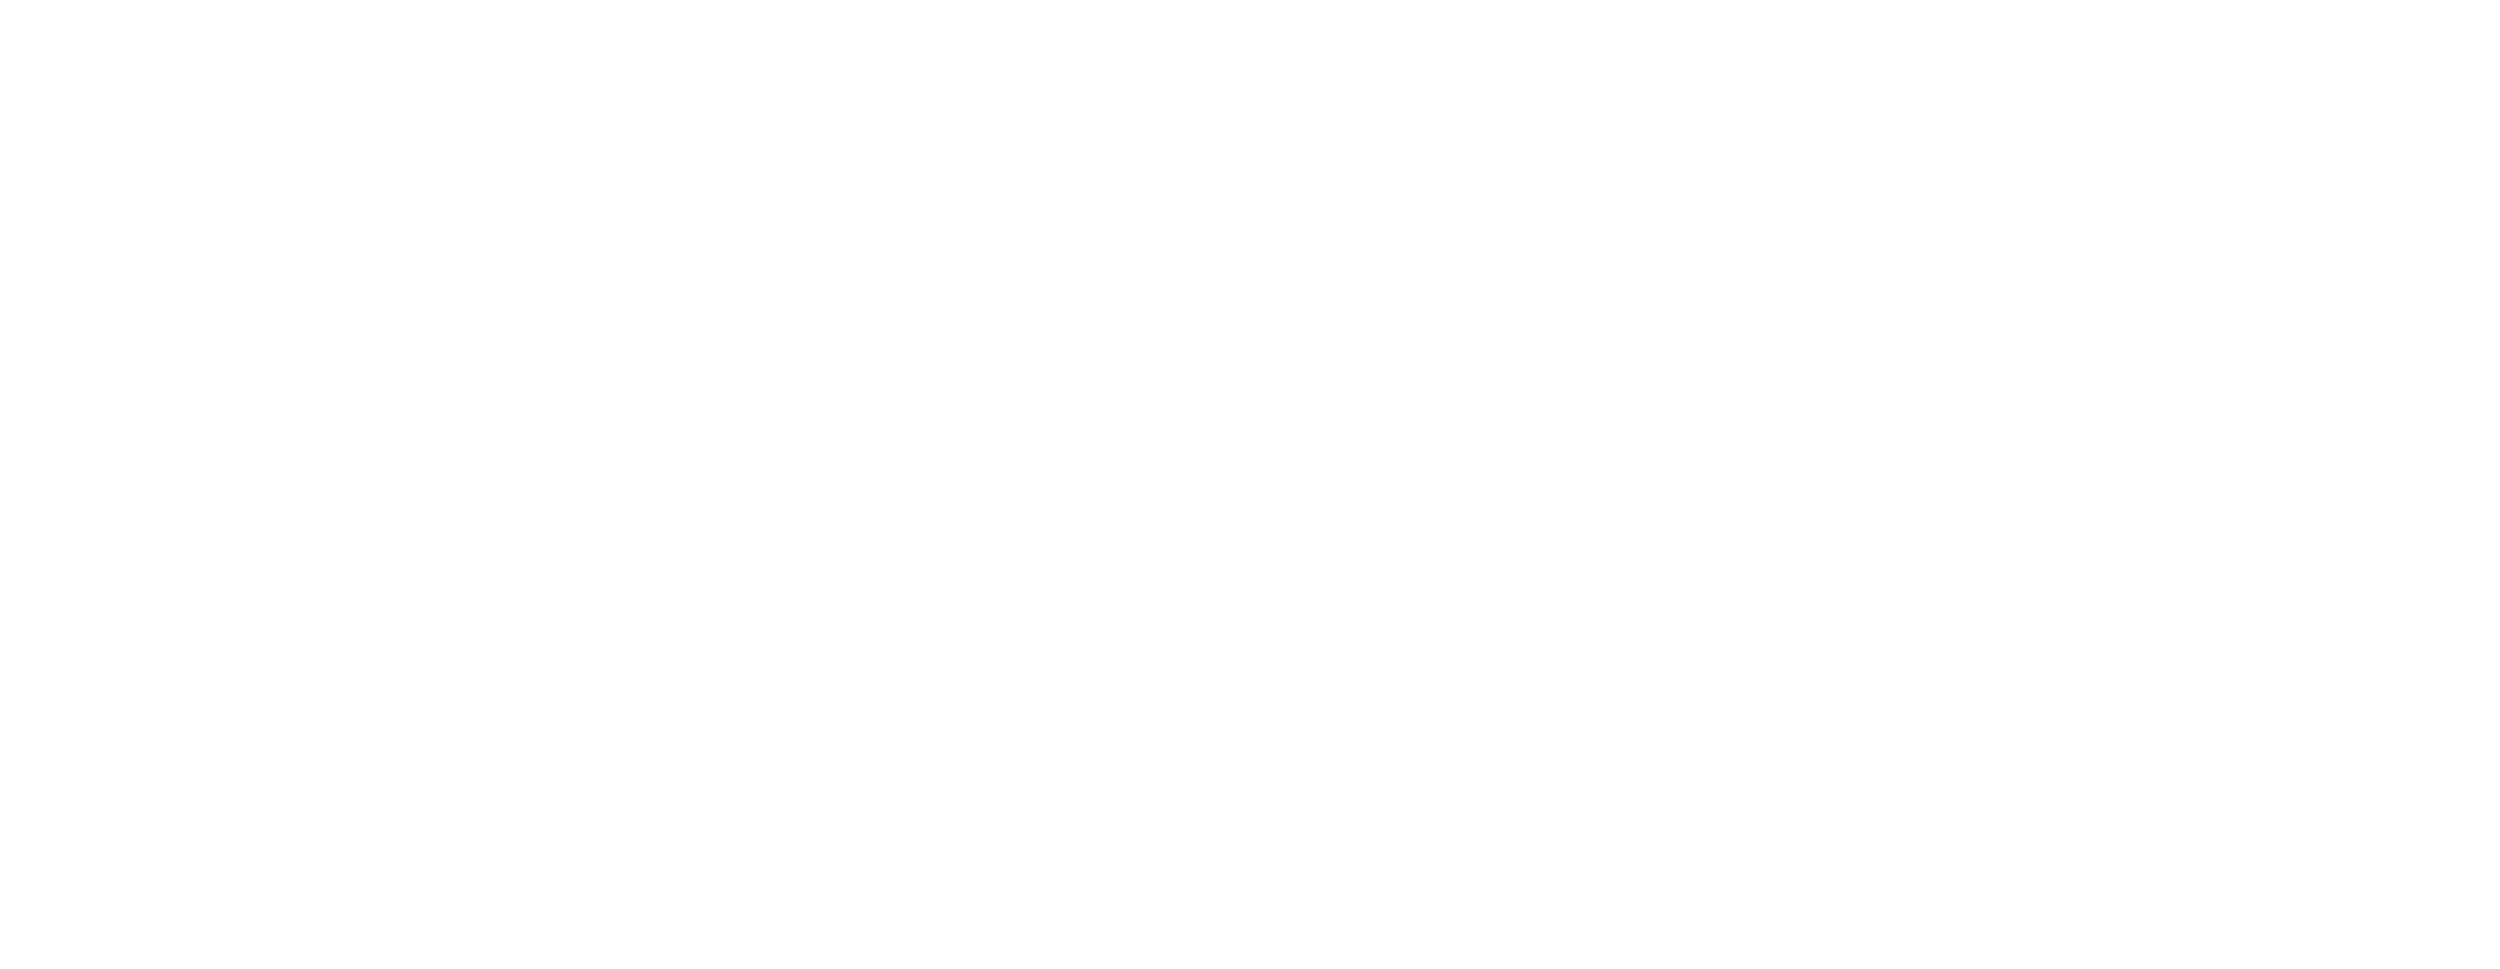 Airport Retail Group Australia 